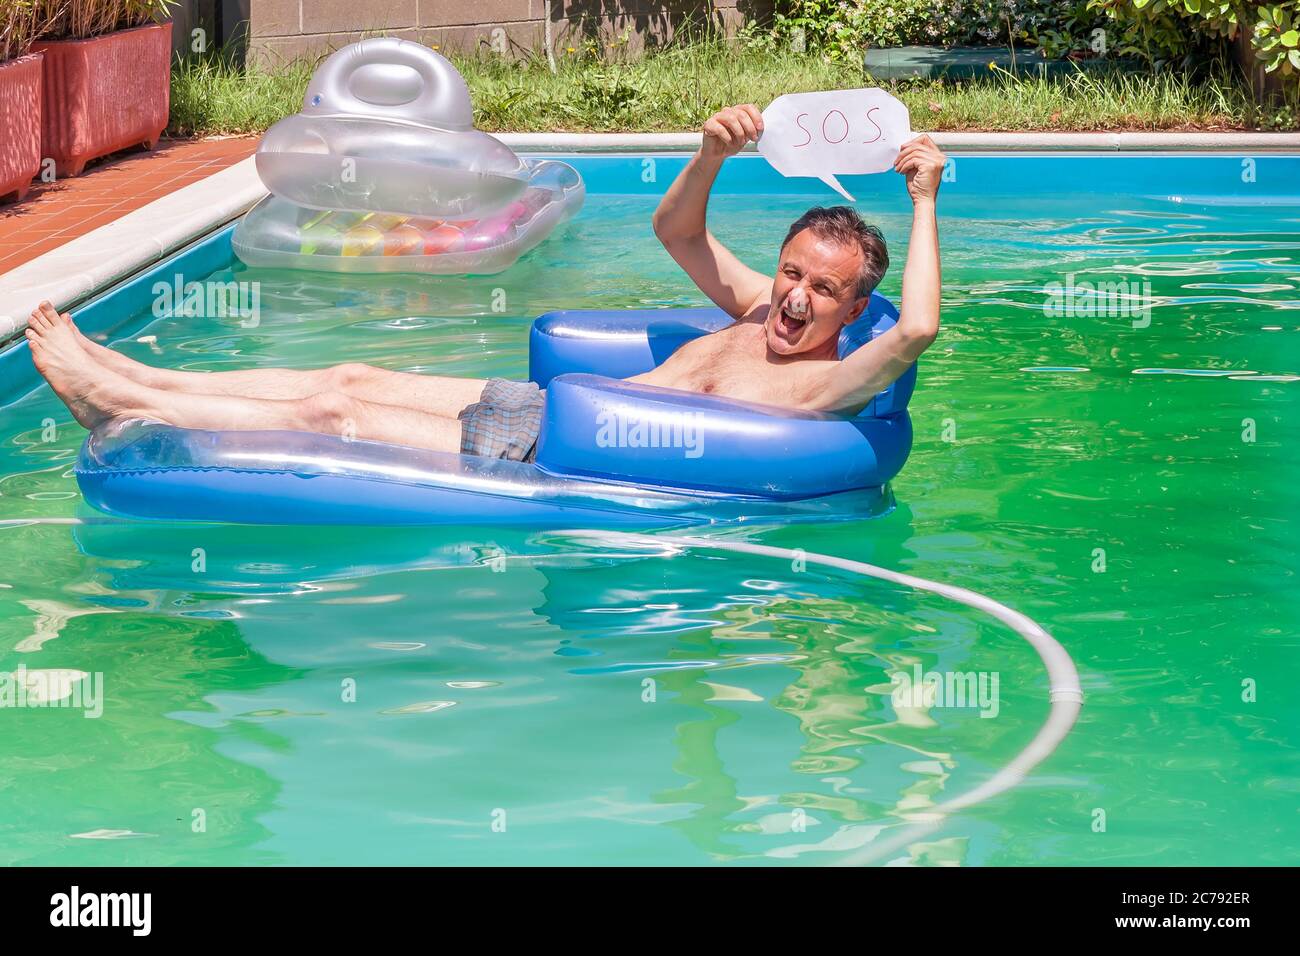 Un homme blanc sur un matelas gonflable dans une piscine tient le S.O.S. pour demander de l'aide Banque D'Images